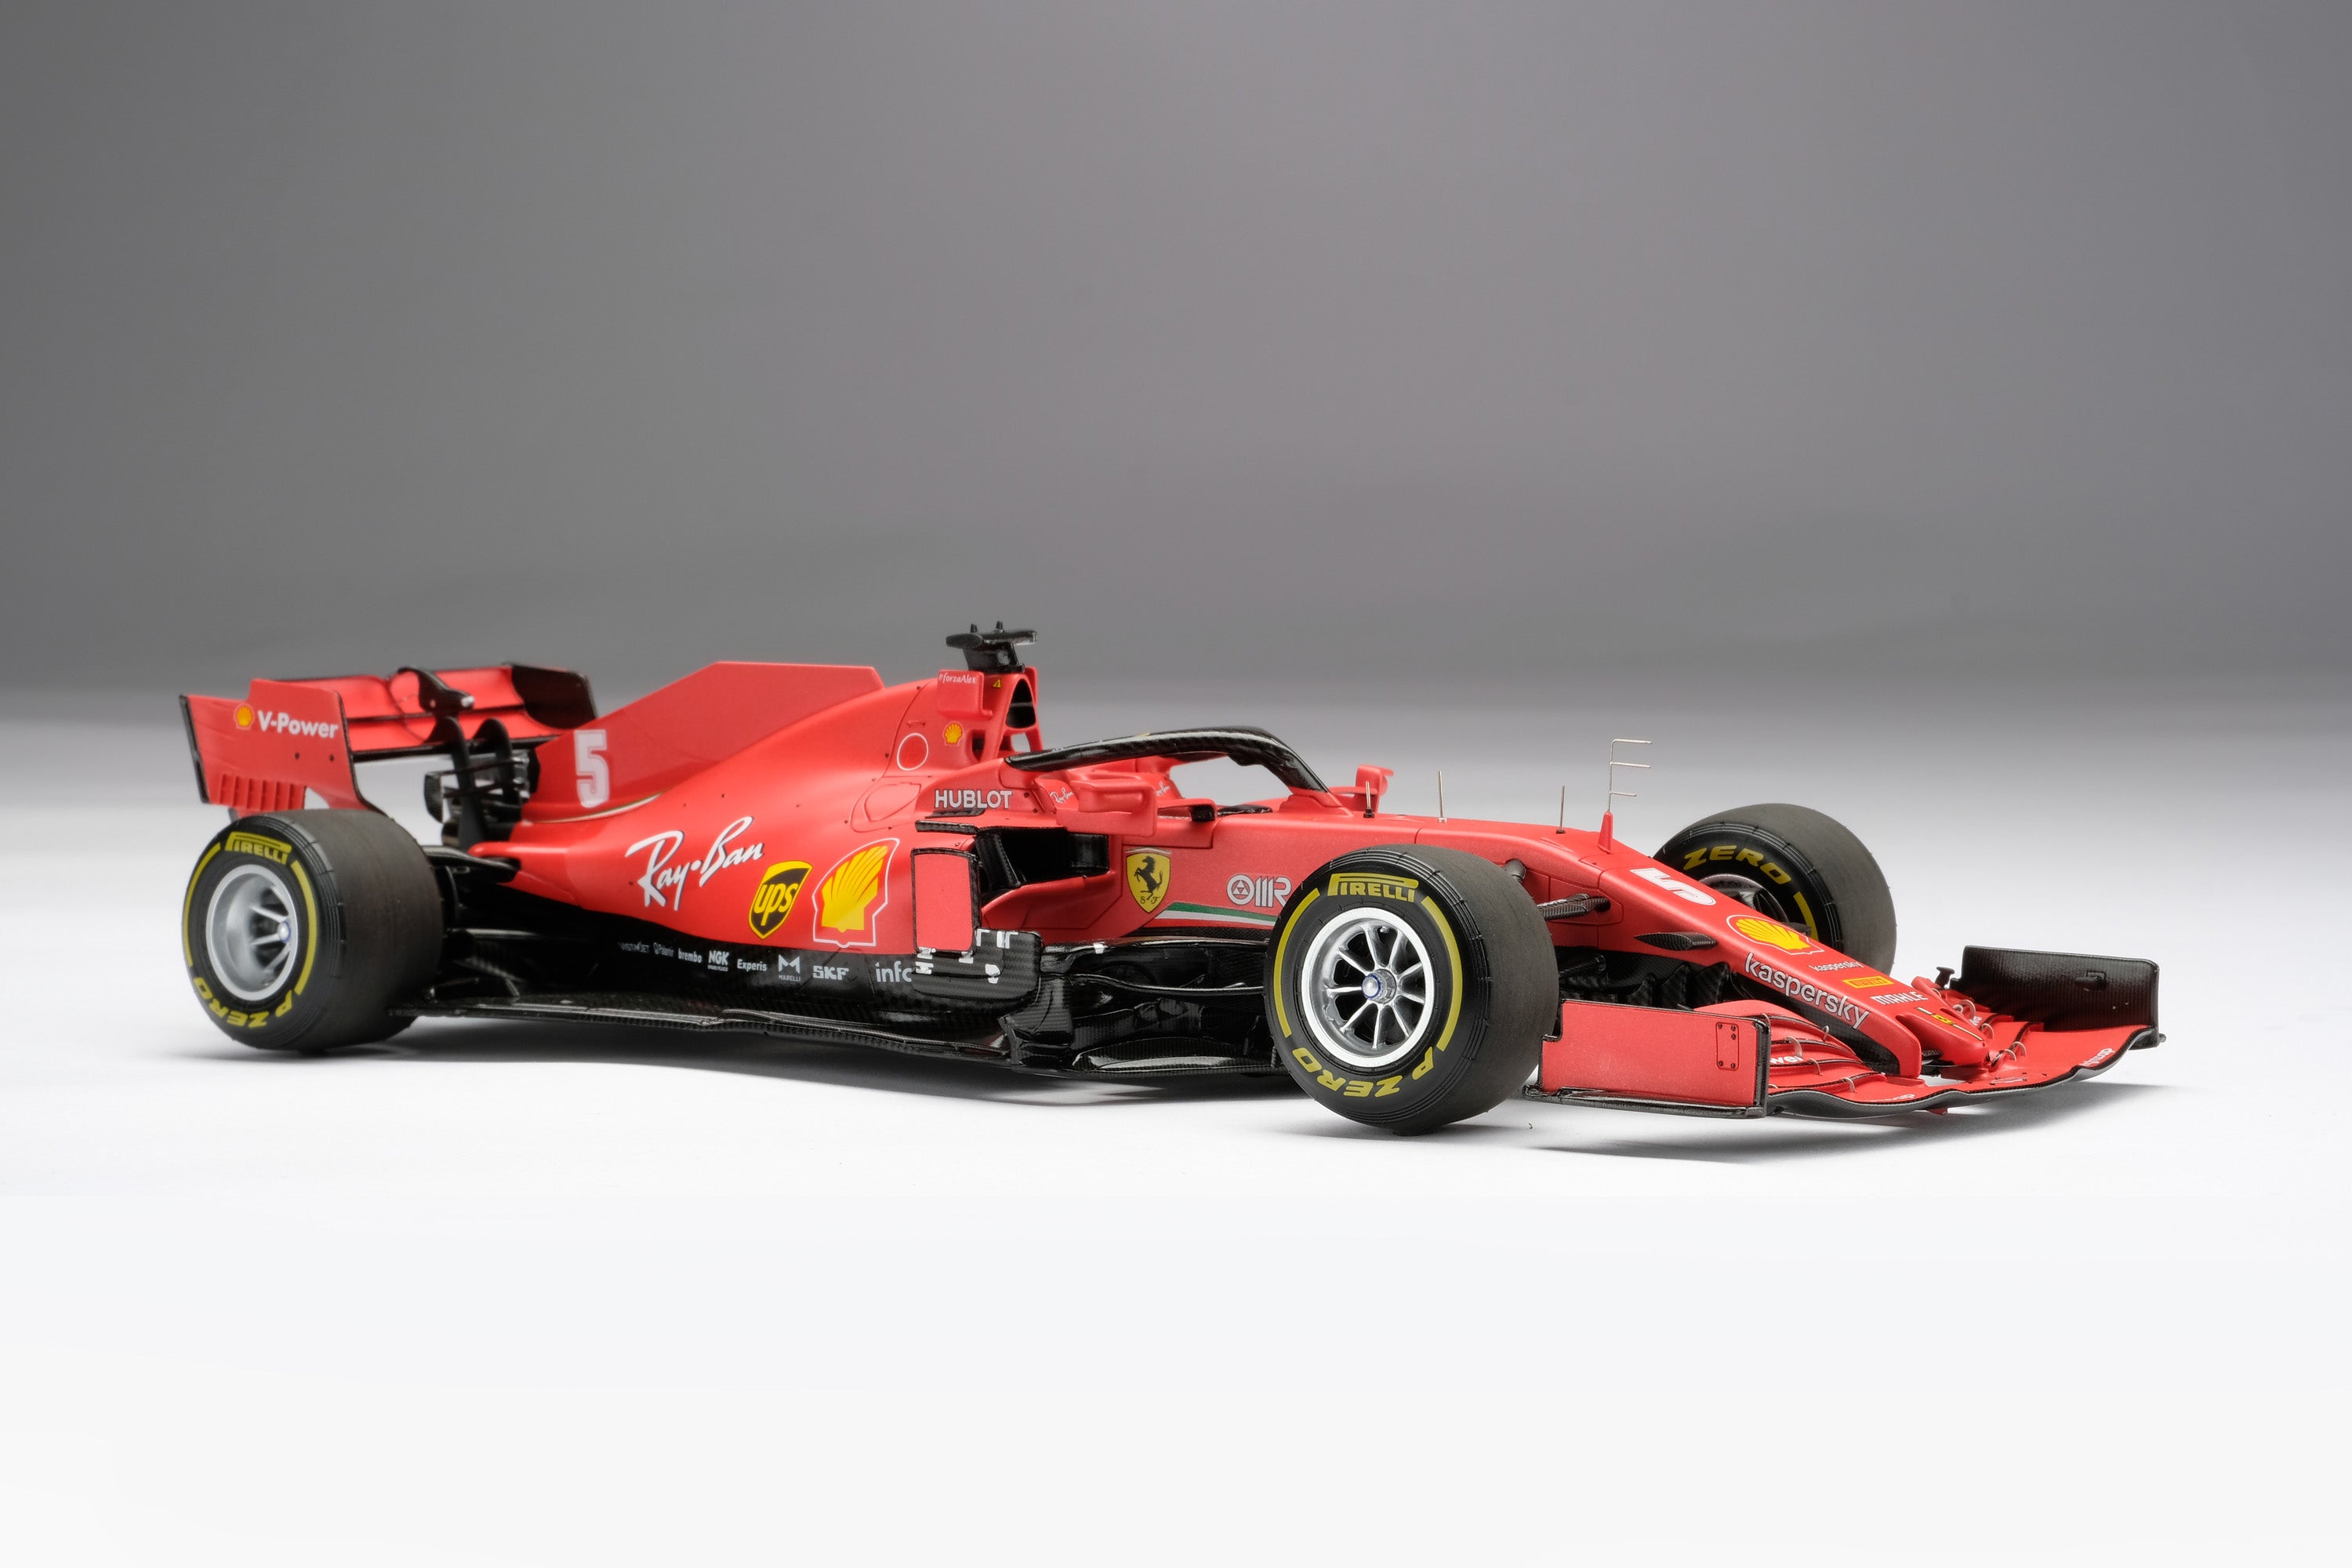 Ray-Ban Taps Scuderia Ferrari F1 Racers to Design Two New